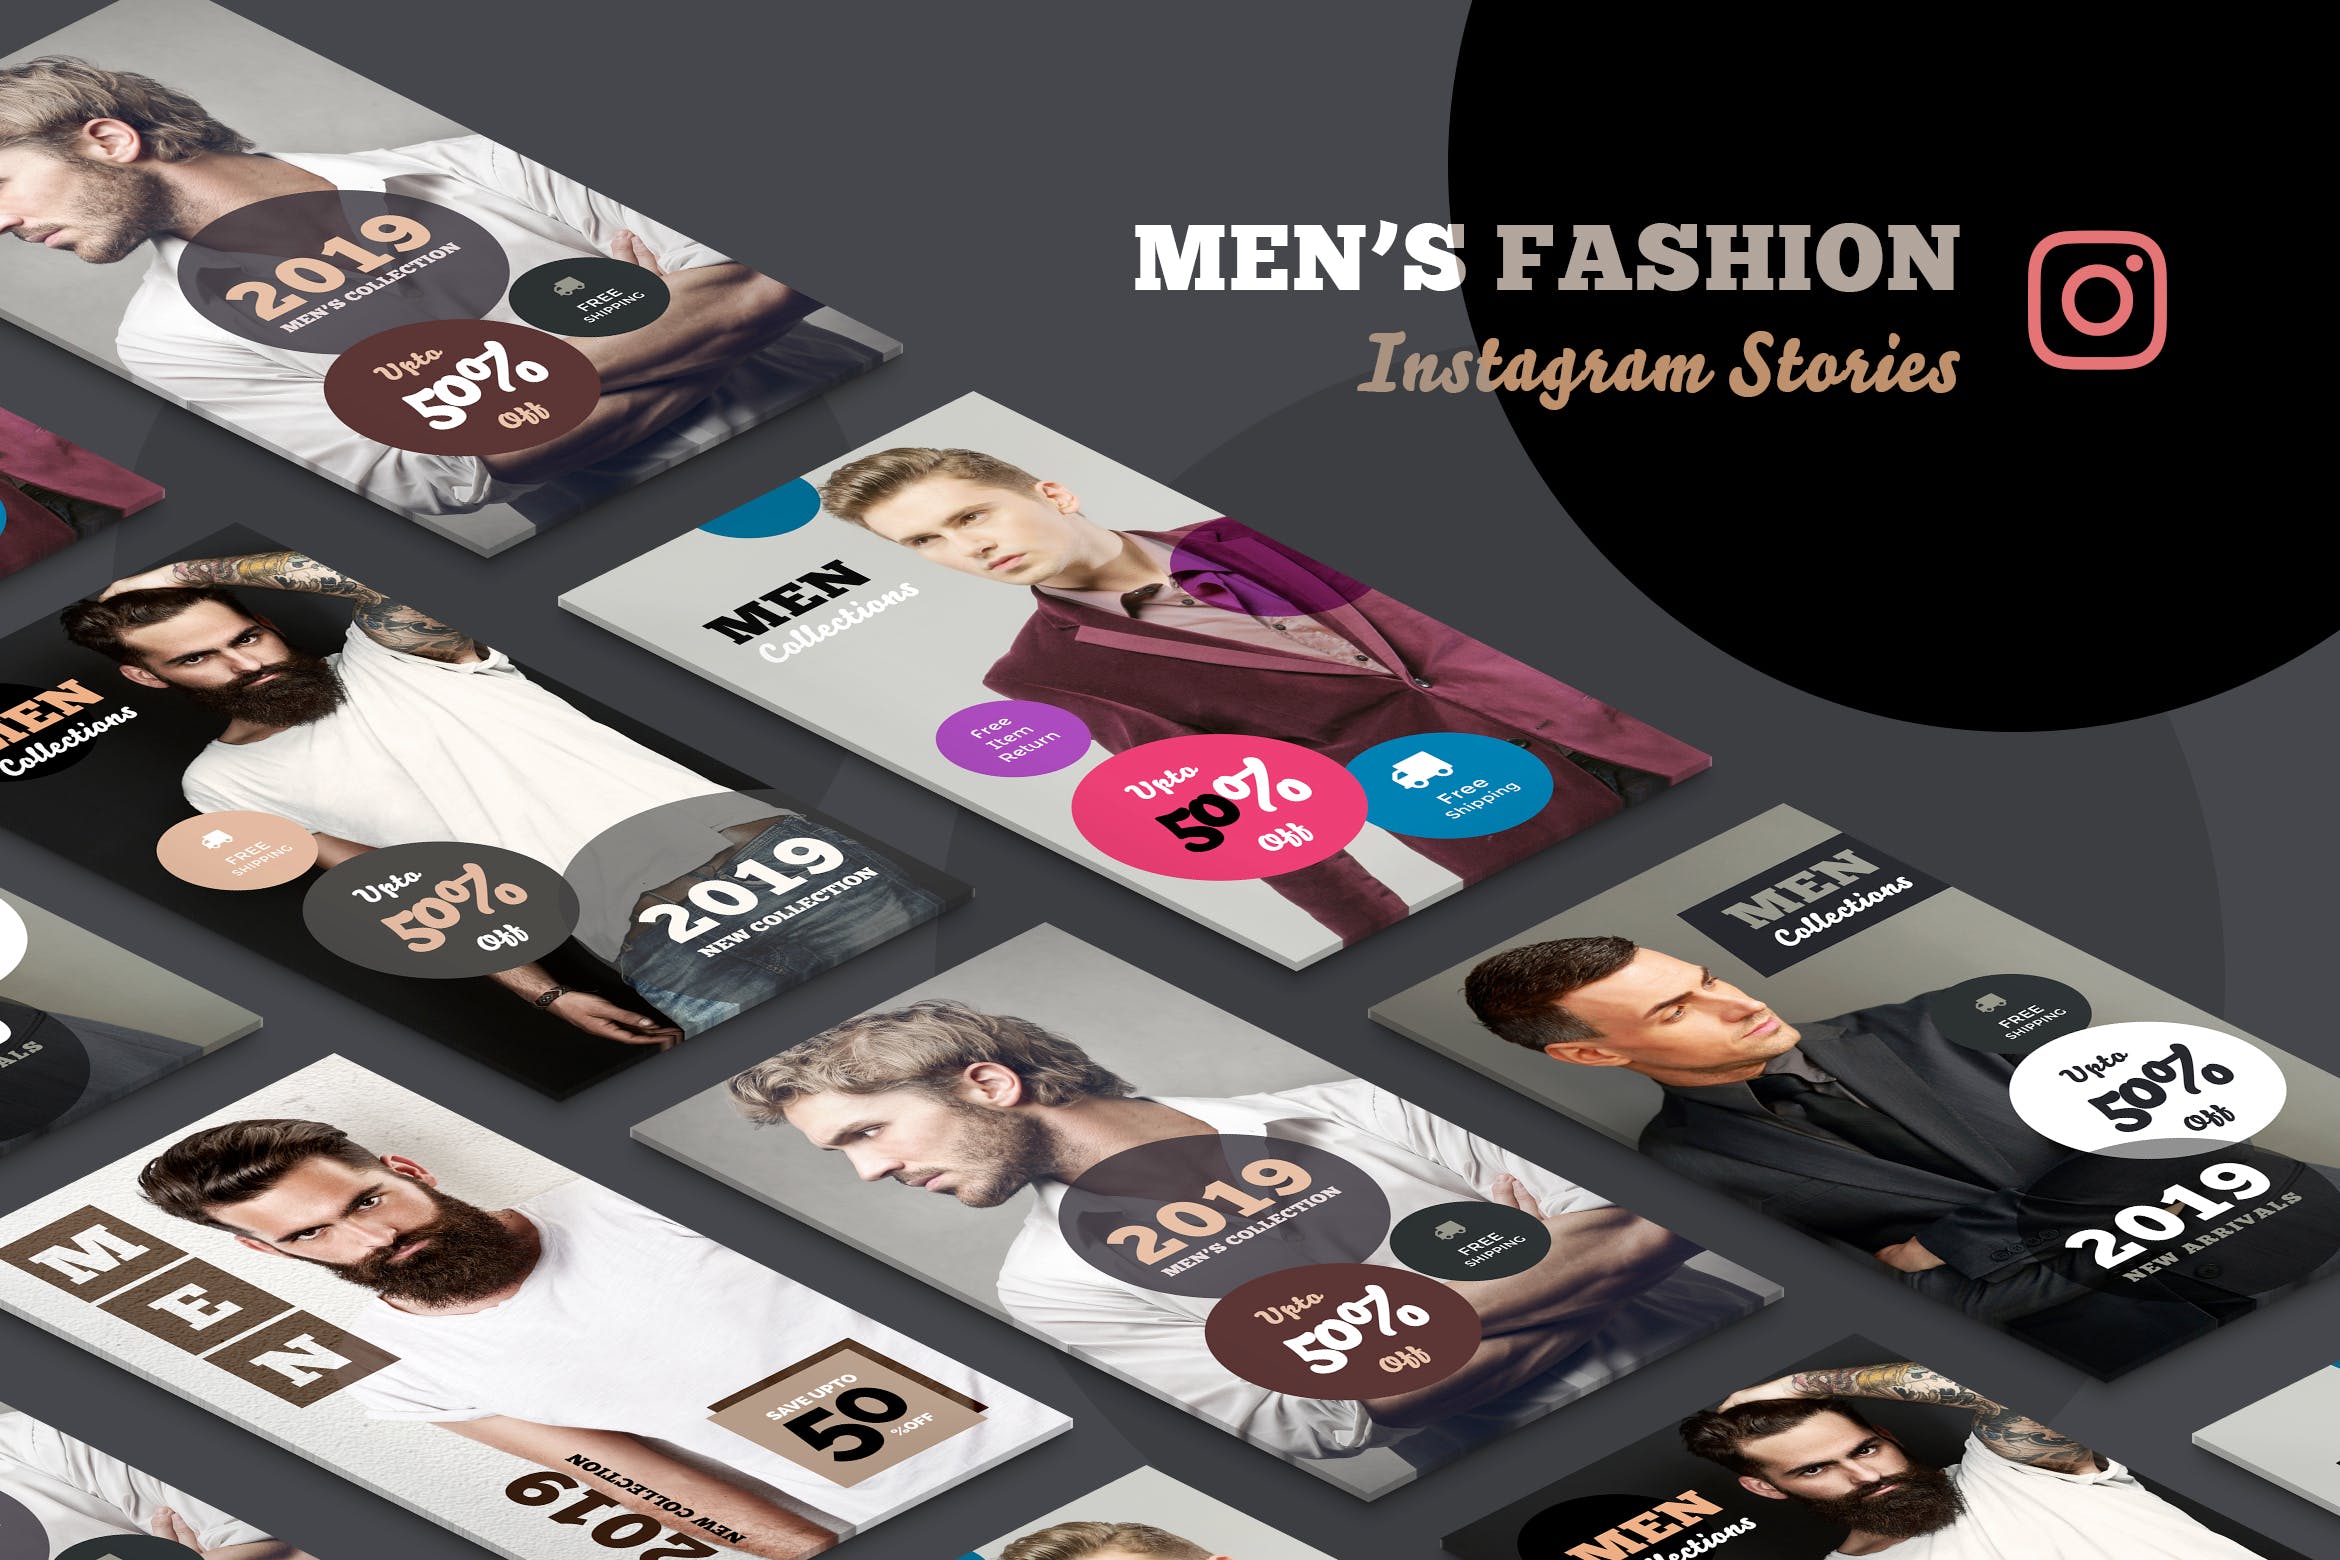 男士时尚杂志Instagram广告帖子社交媒体模板 Men’s Fashion Instagram Stories设计素材模板